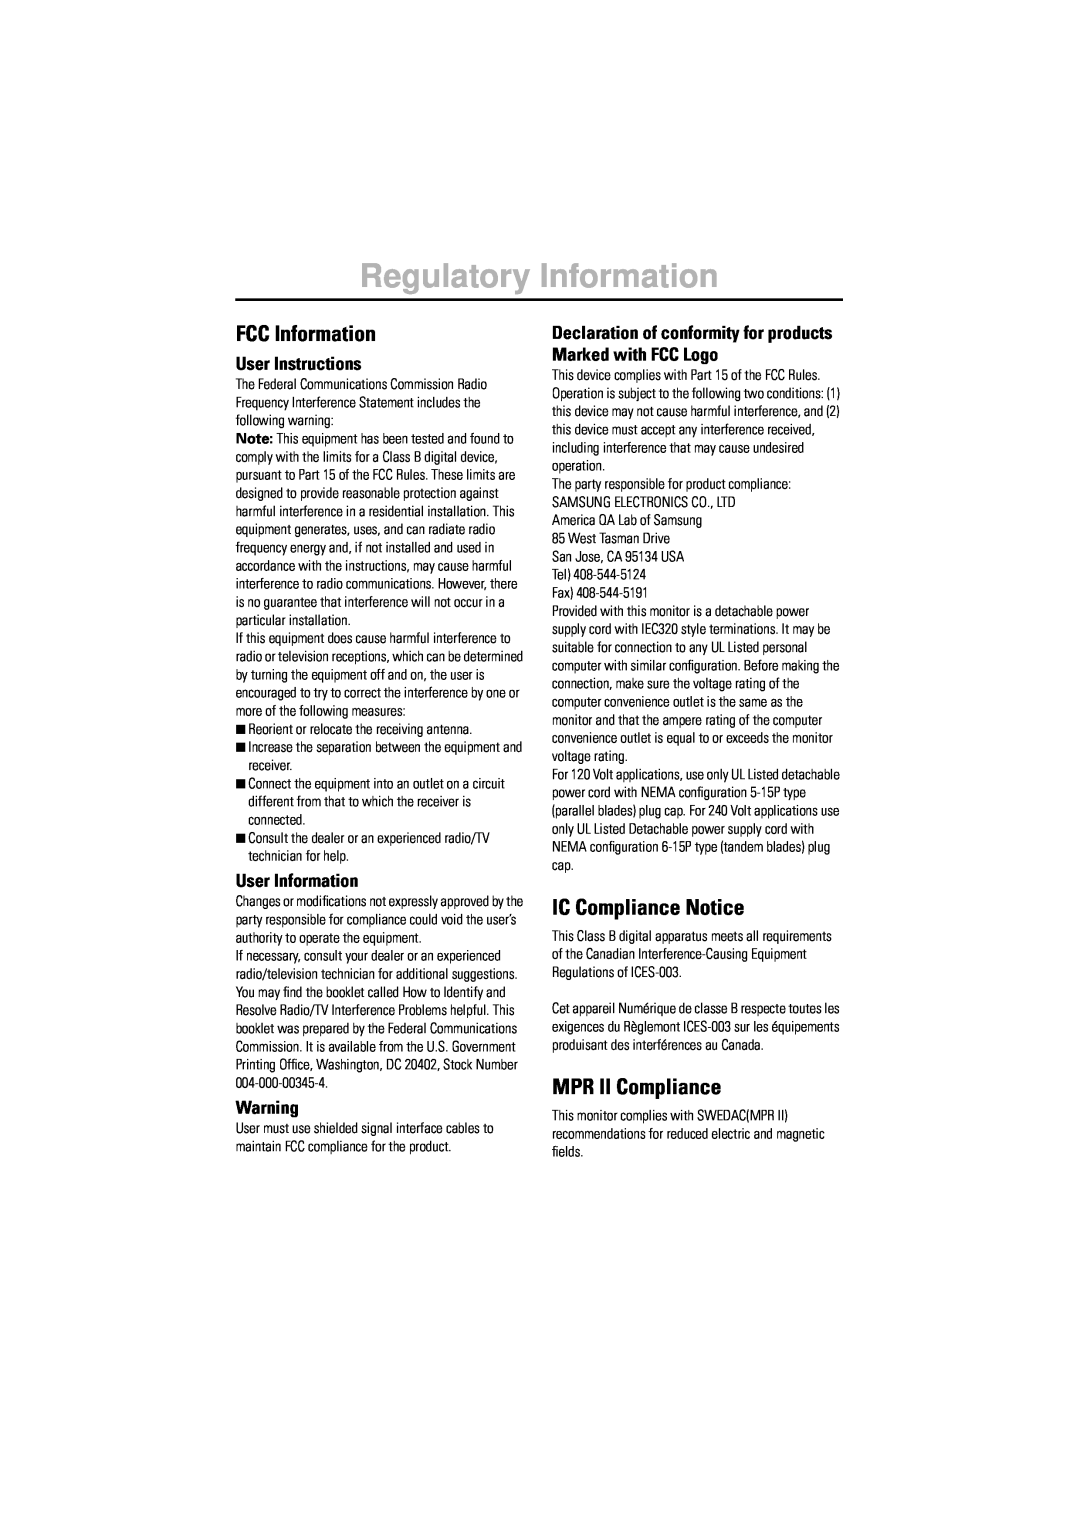 Samsung 550B manual Regulatory Information, User Instructions, User Information, FCC Information, IC Compliance Notice 